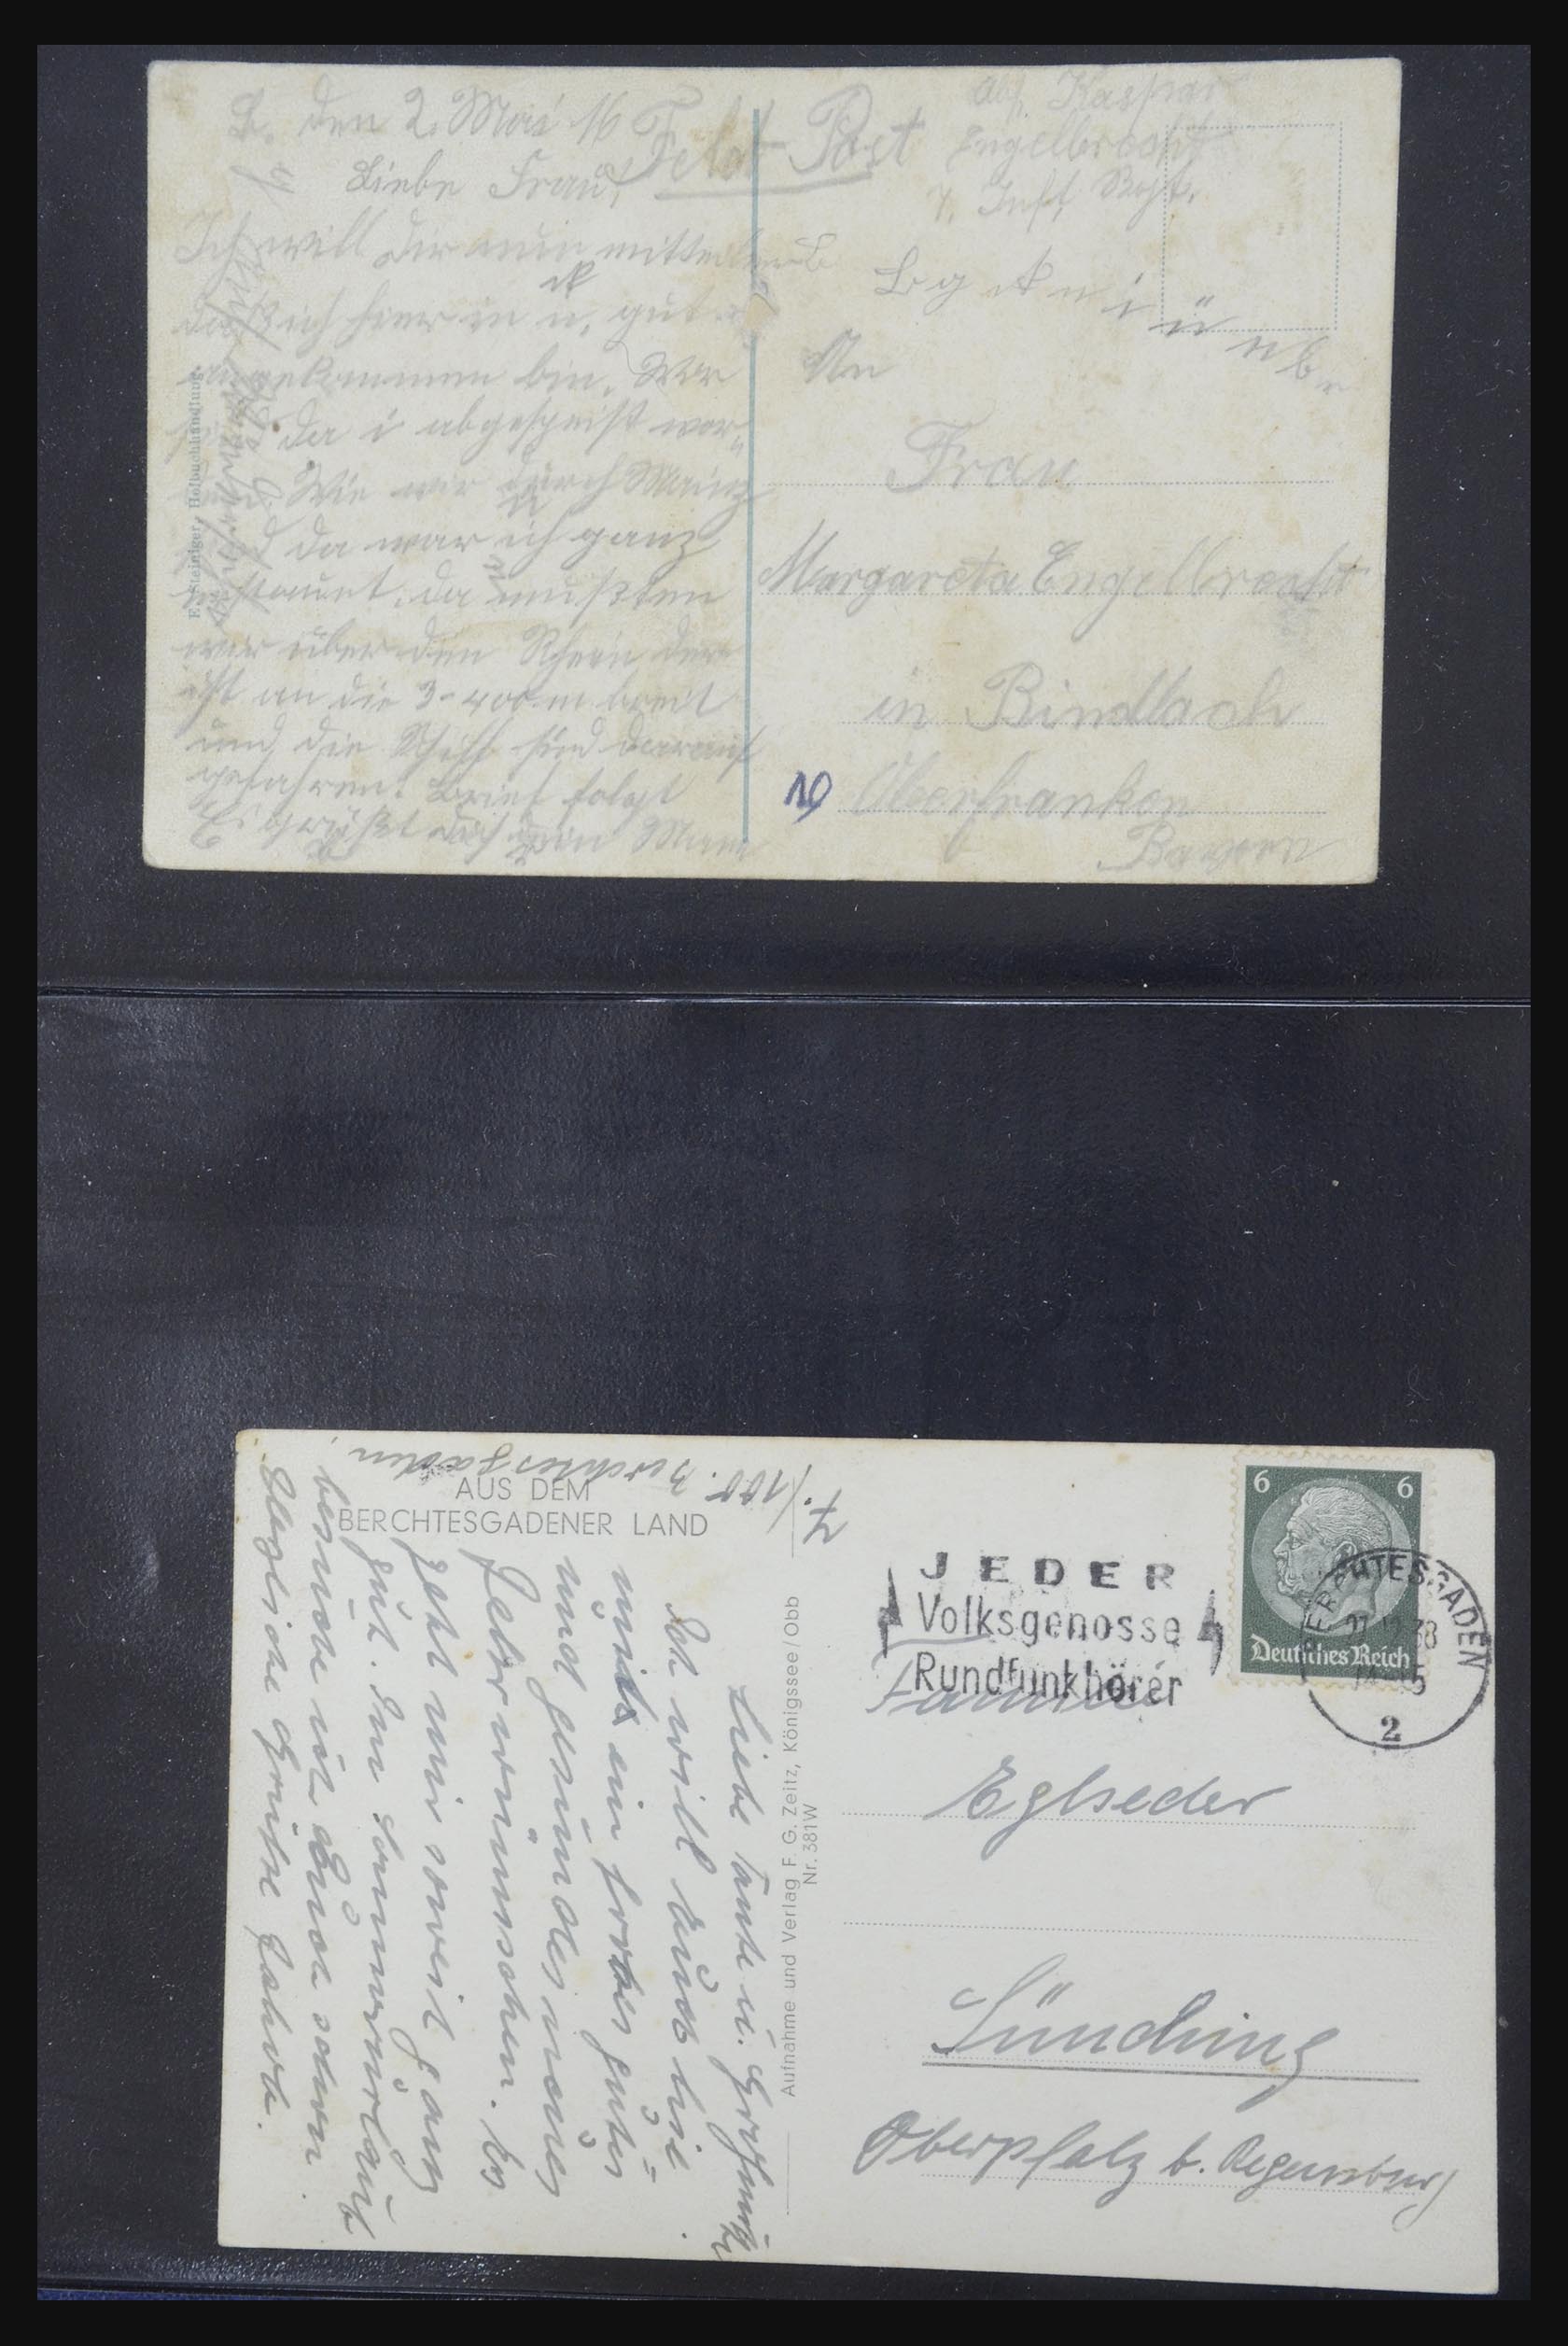 31952 417 - 31952 German Reich cards.